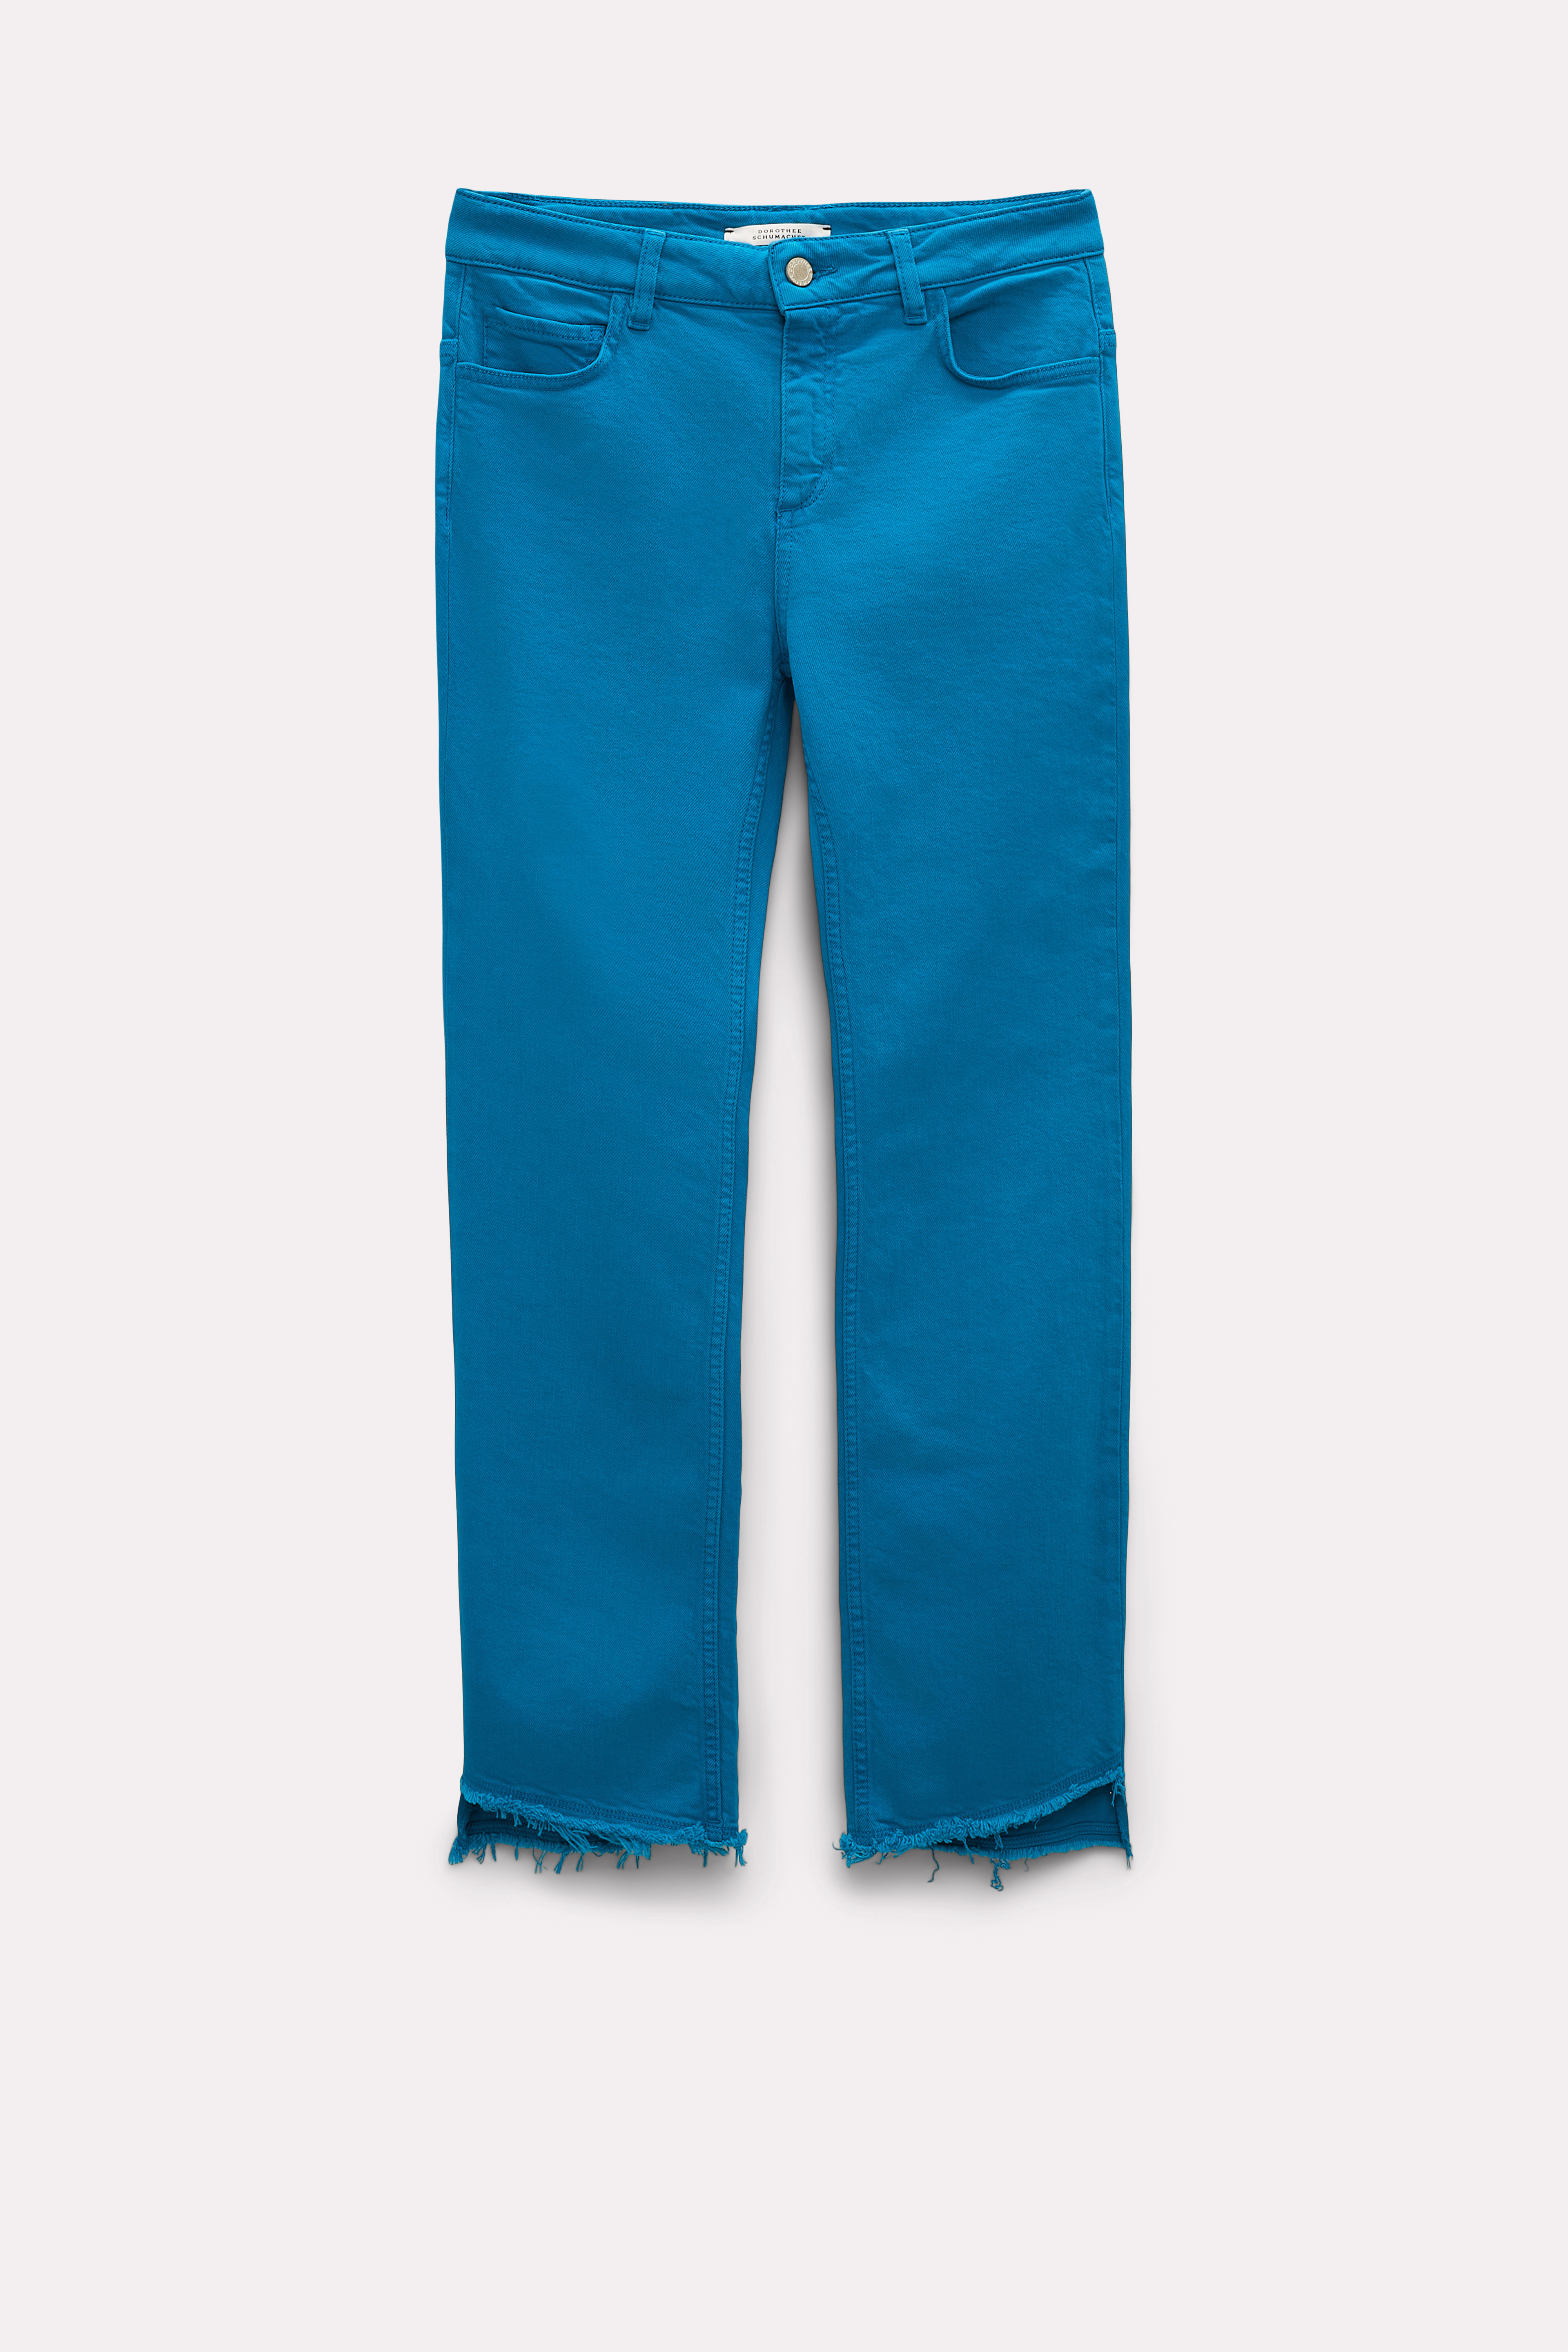 Black Skinny Denim Jeans for Men JN-828 | Jared Lang Official Website